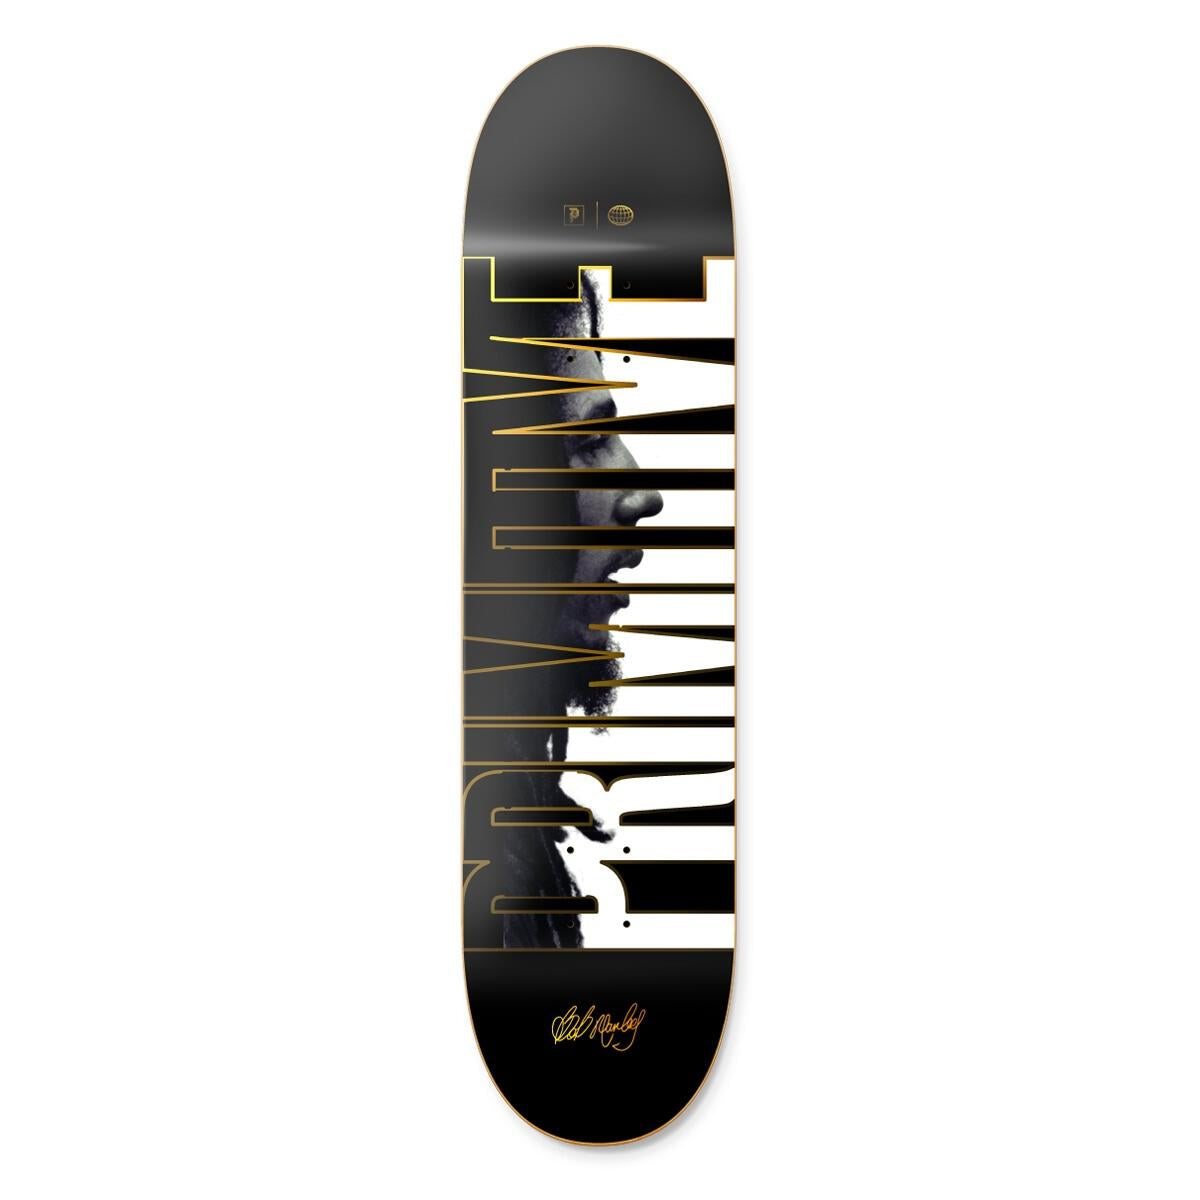 Bob Marley Primitive Skateboards Tribute Skateboard Deck